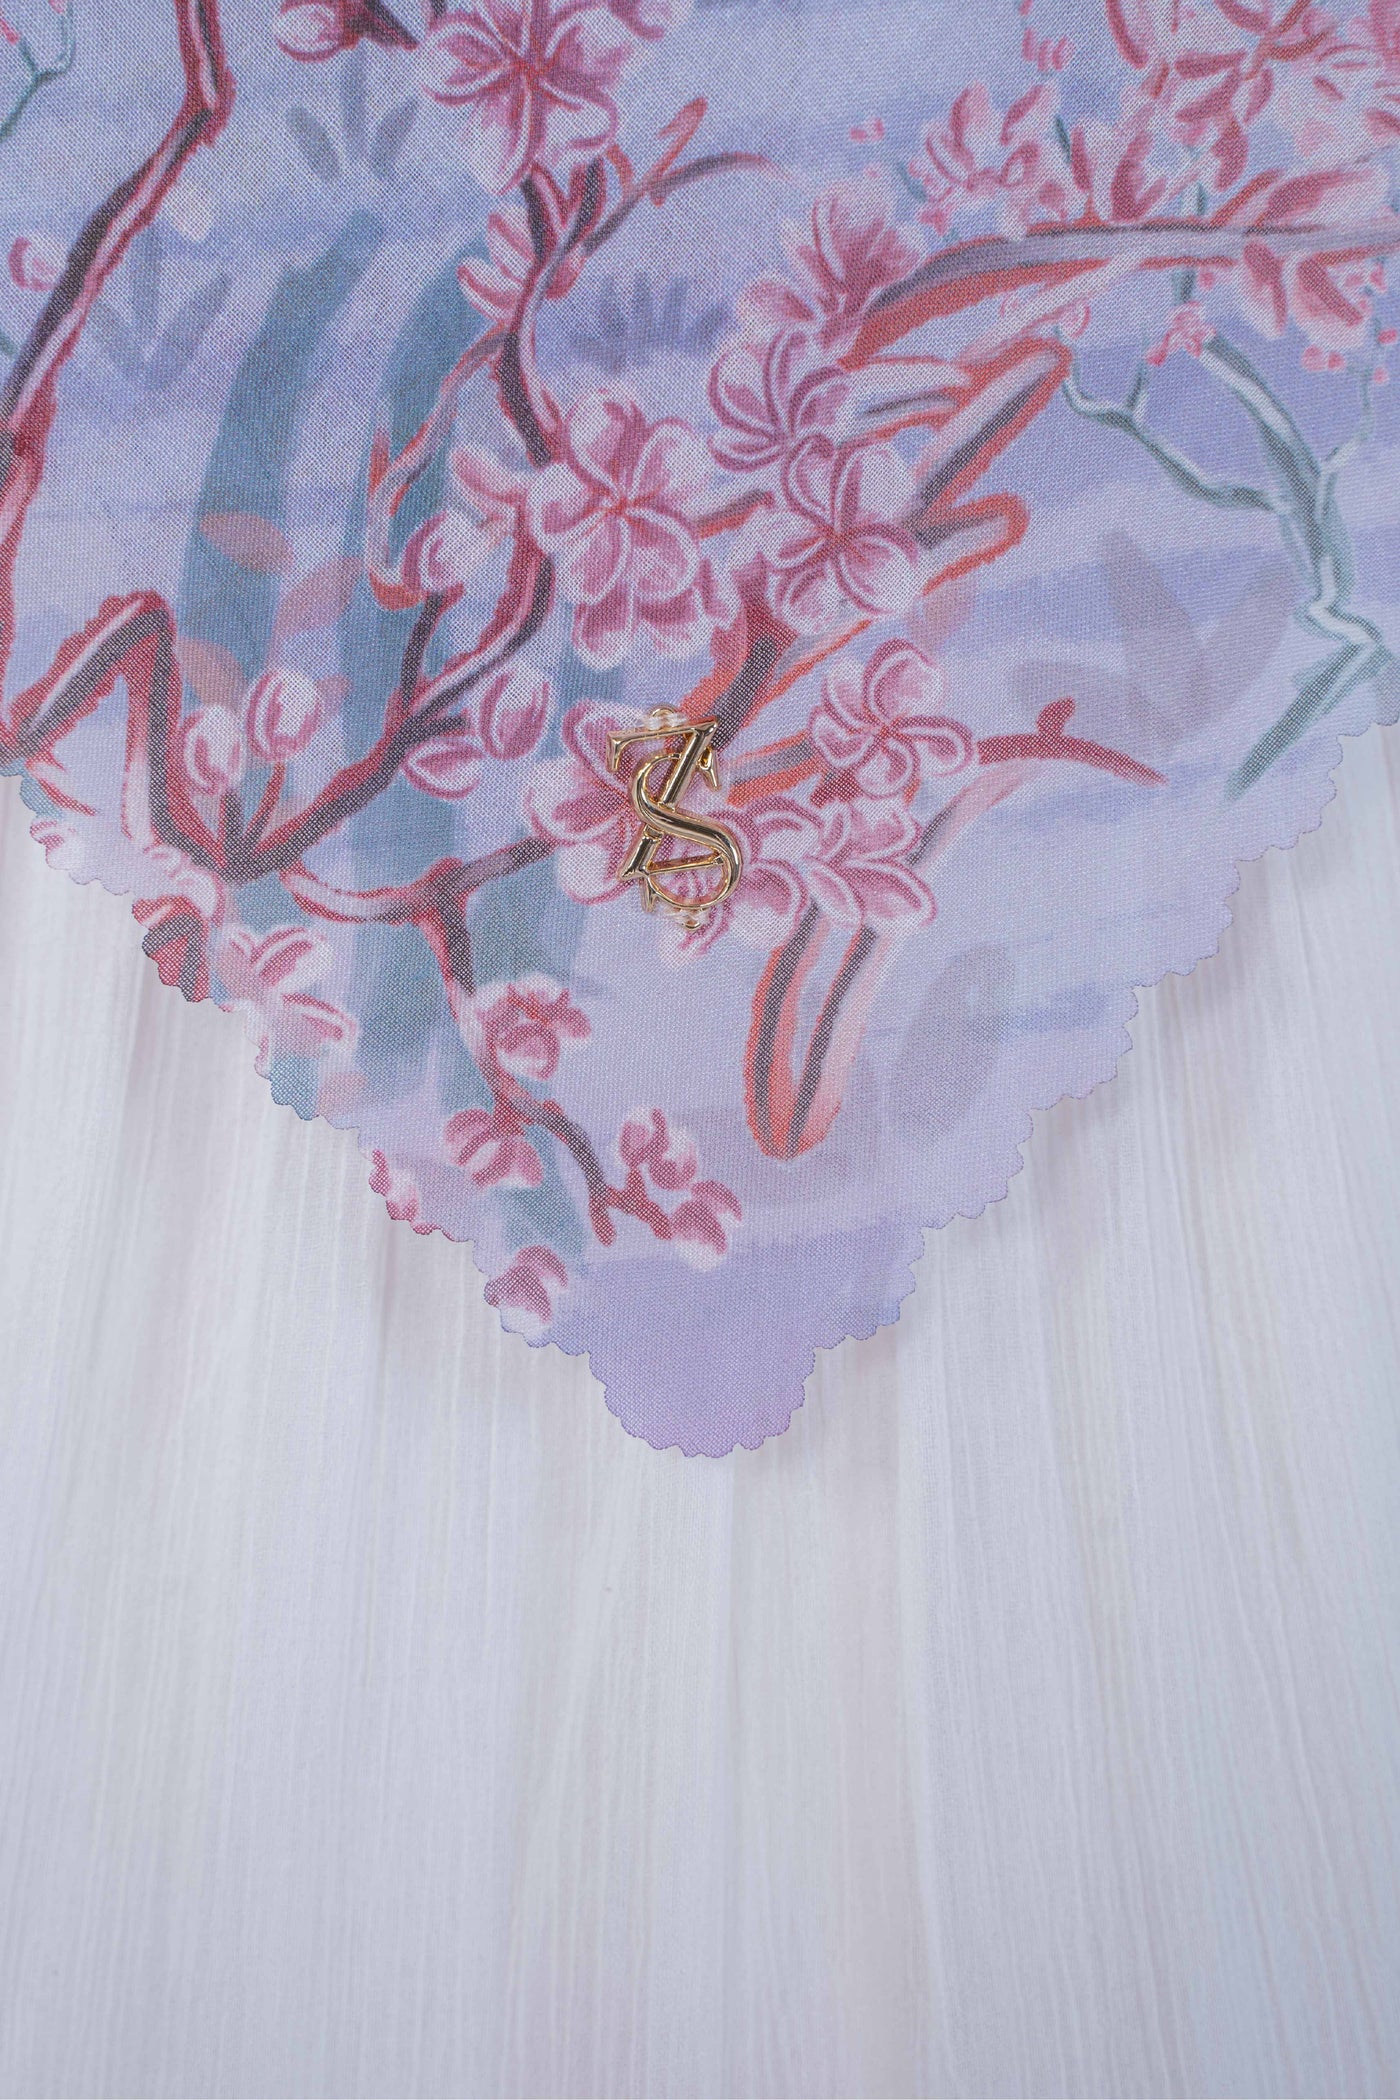 Kanbatsu Series - Misty Lilac